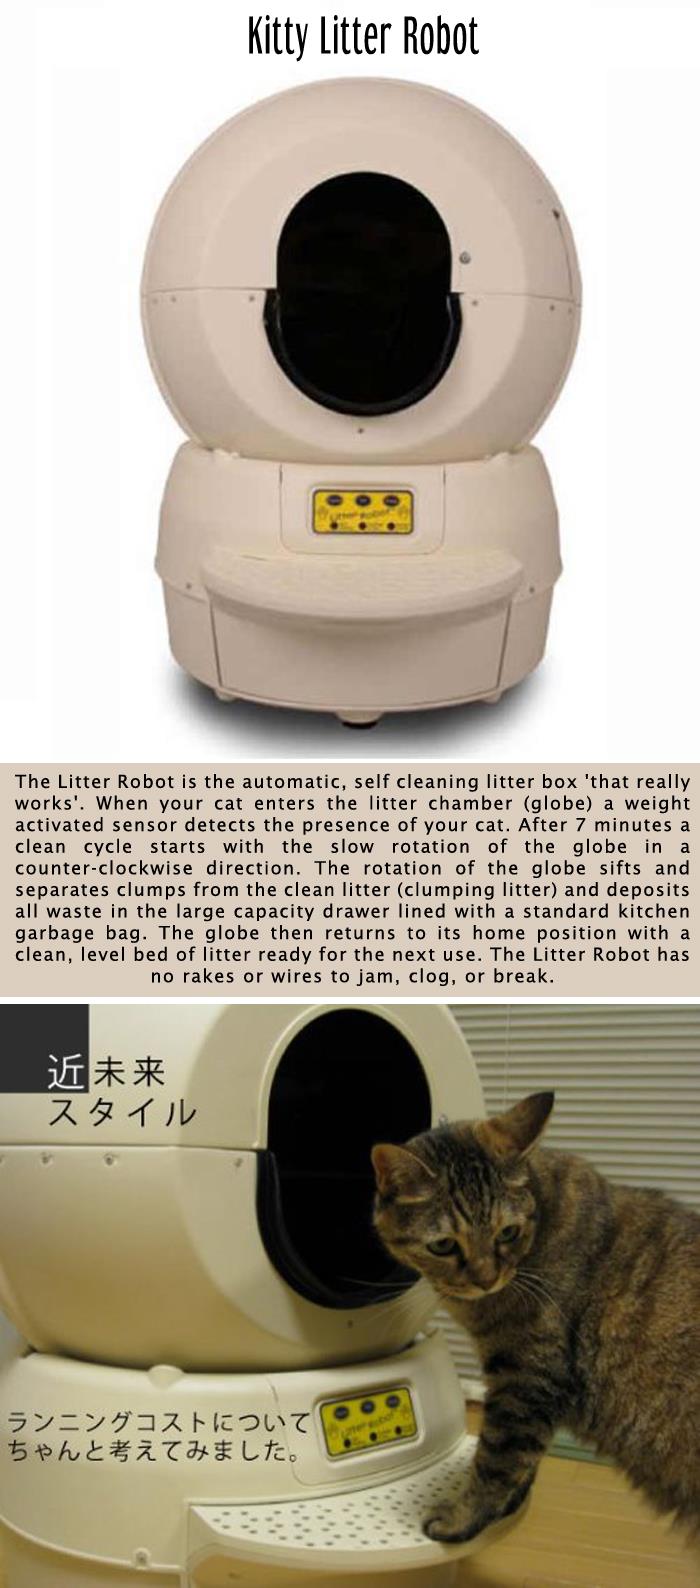 Kitty Litter Robot